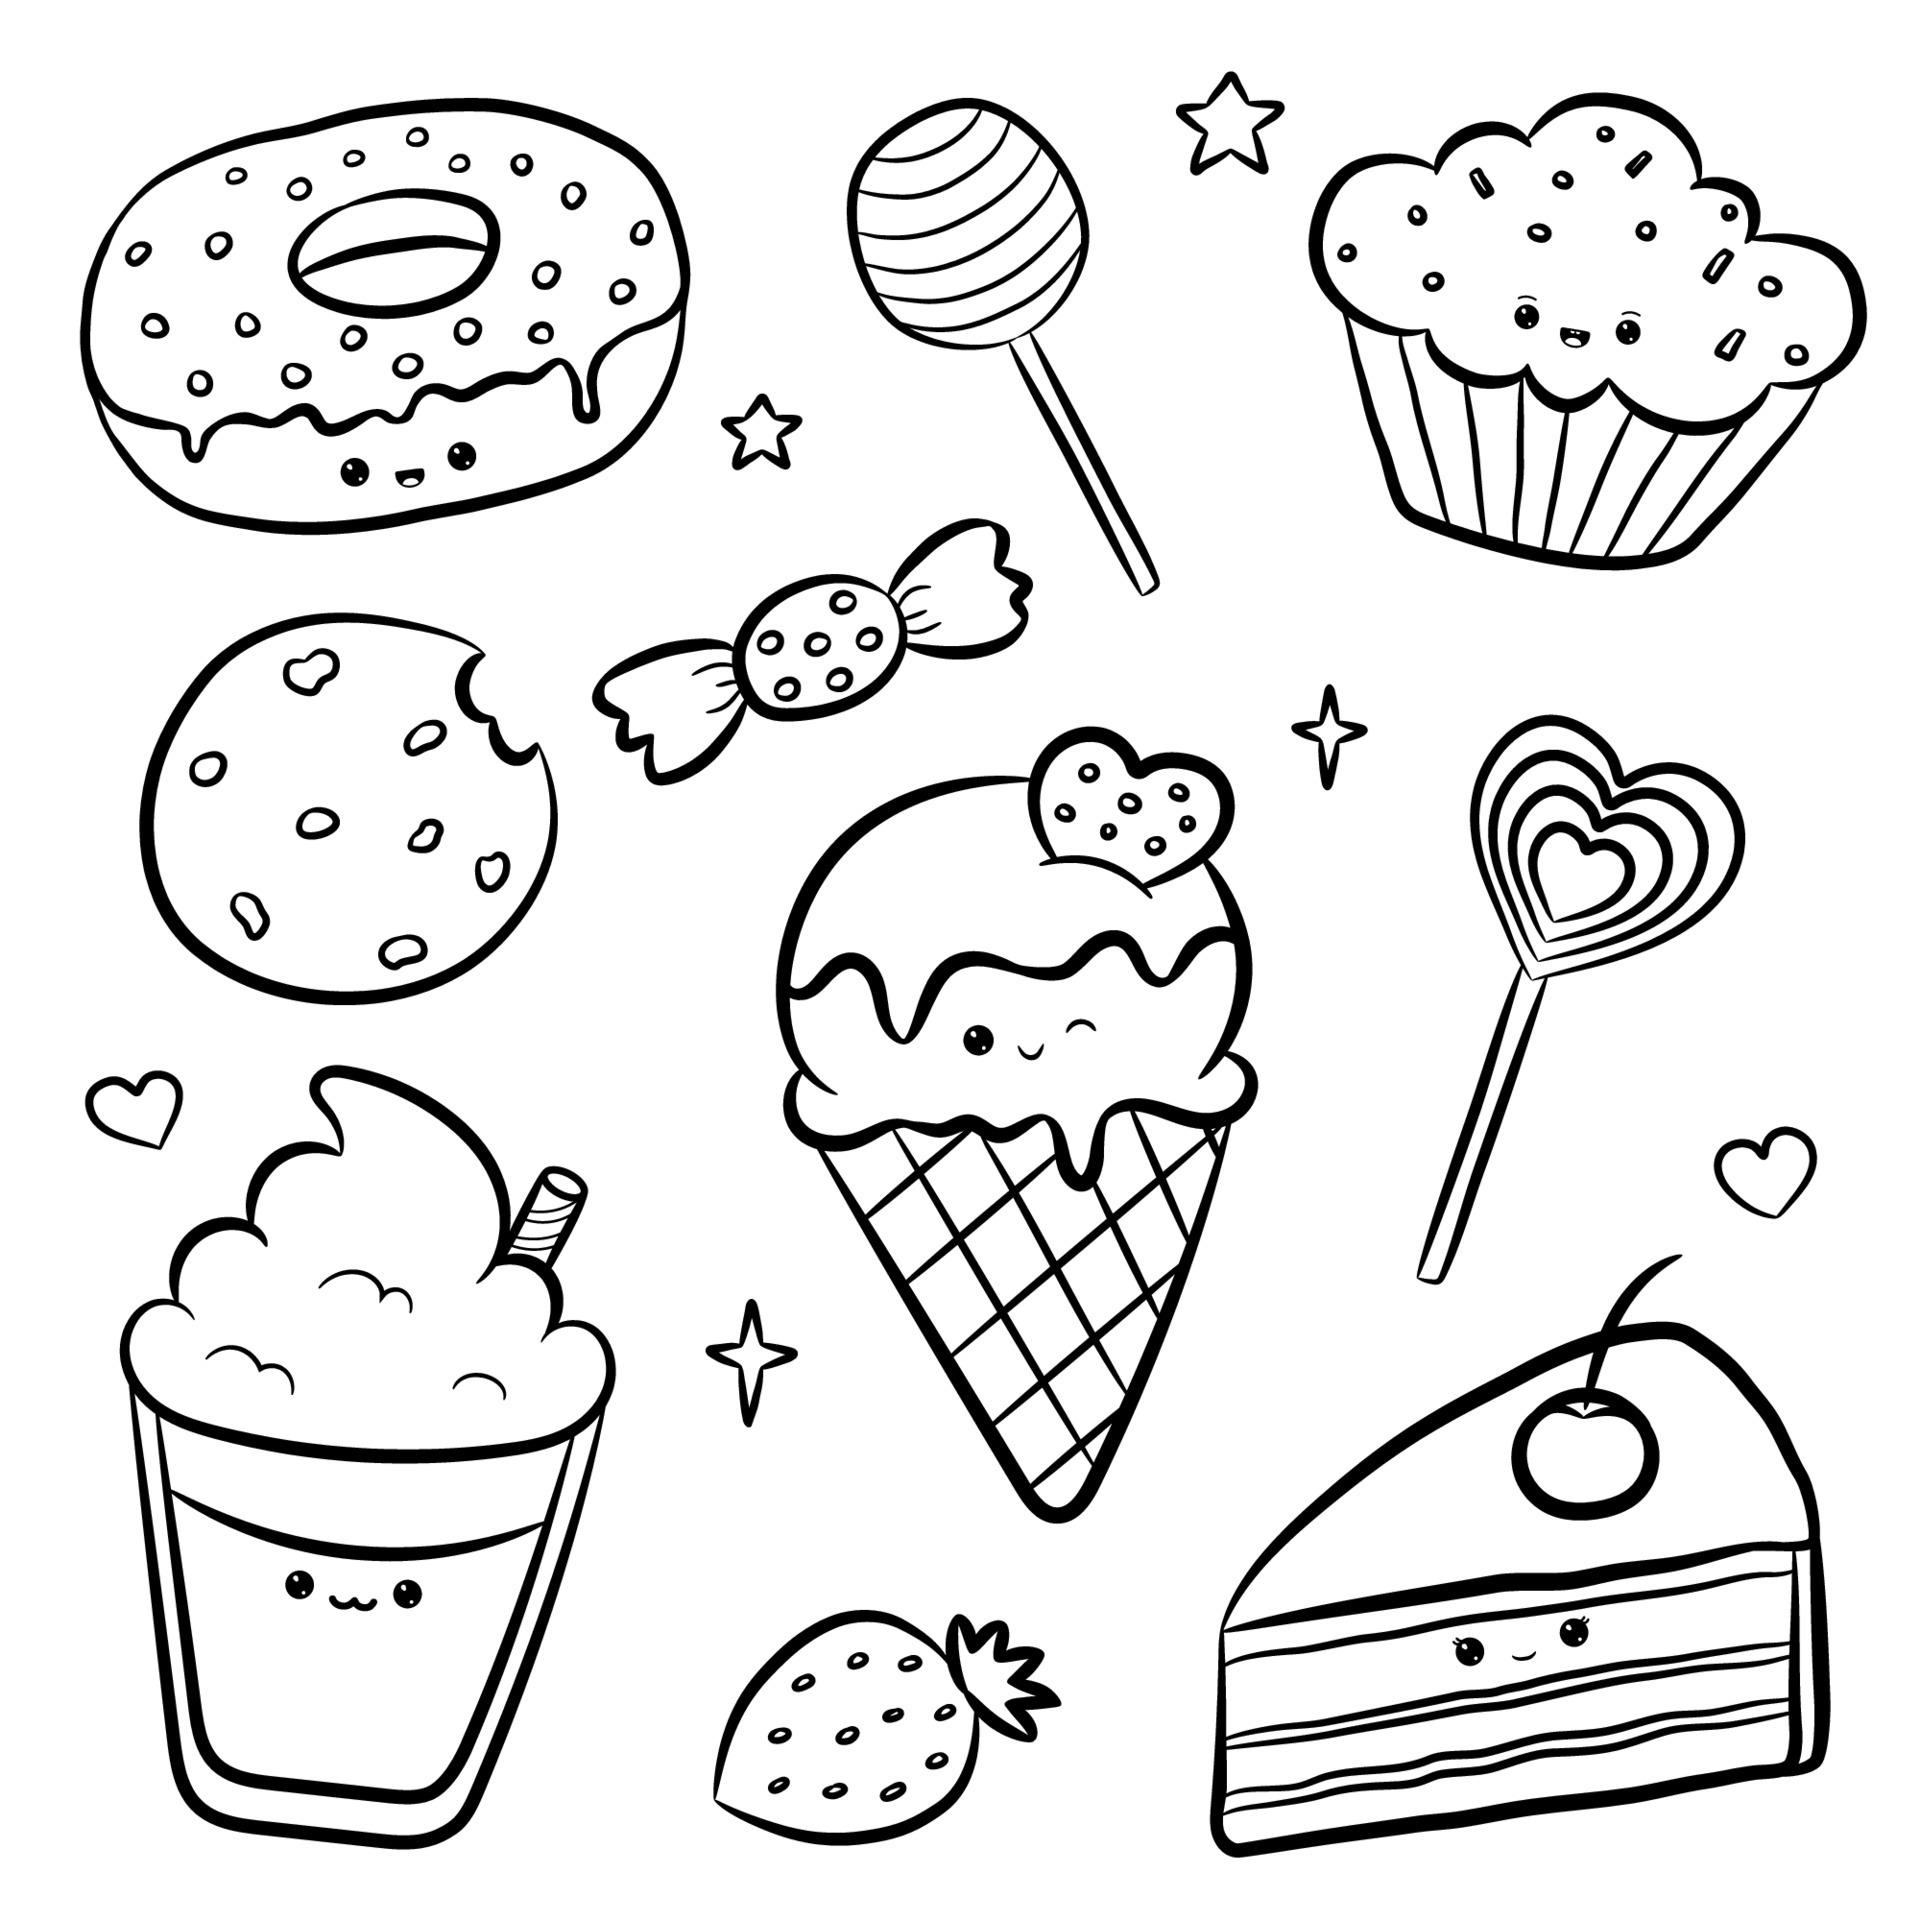 doodle personagens doces no estilo kawaii com rosto bonito. livro de colorir  anti-stress. muffin, bombom, bolo, donut, sorvete, biscoito, café.  ilustração vetorial isolada no fundo branco 5375547 Vetor no Vecteezy